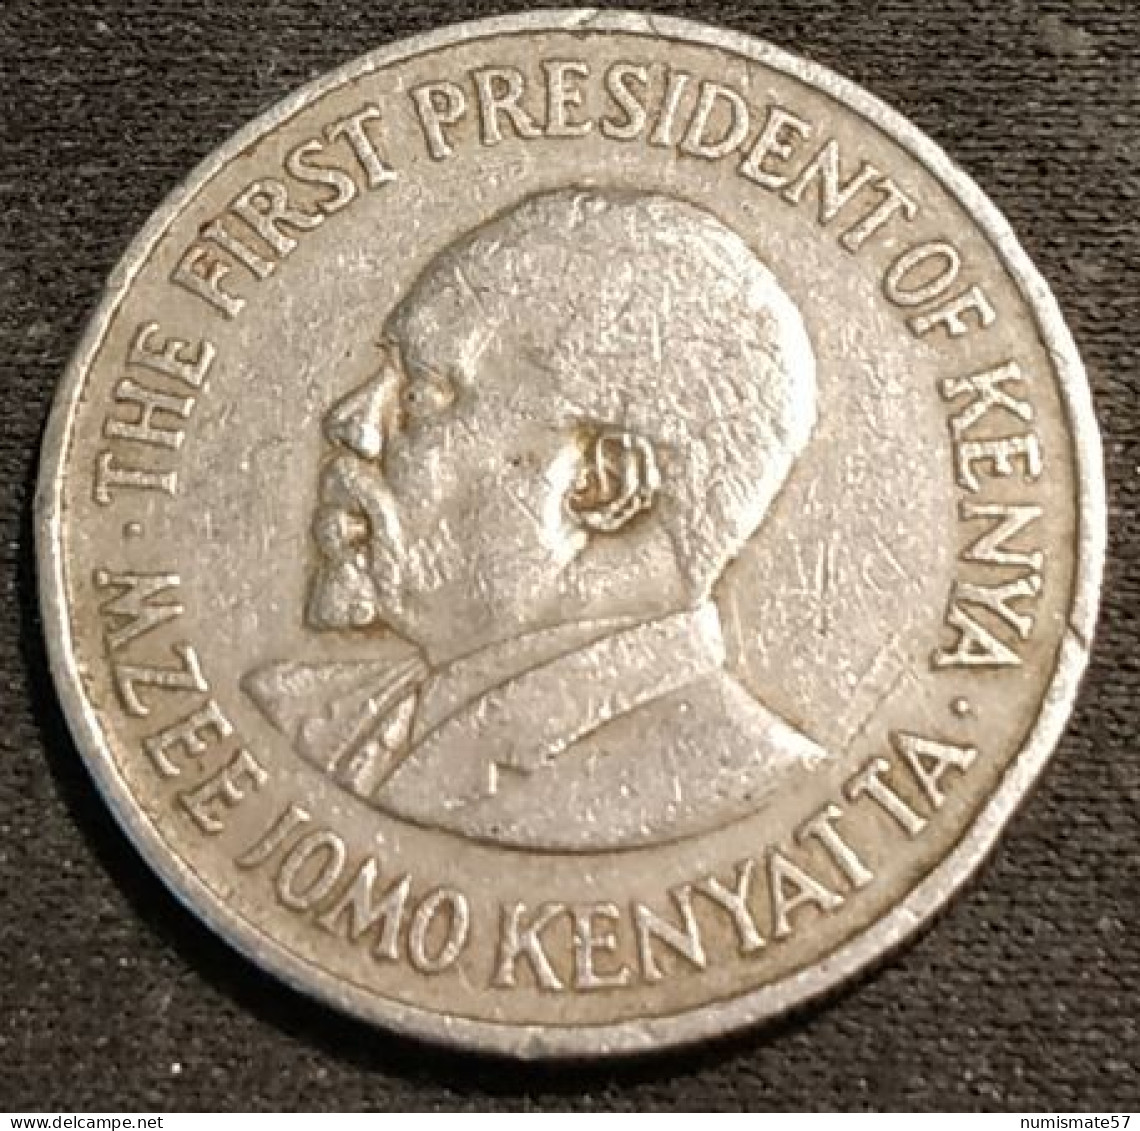 KENYA - 50 CENTS 1969 - Jomo Kenyatta - Avec Légende - KM 13 - Kenya